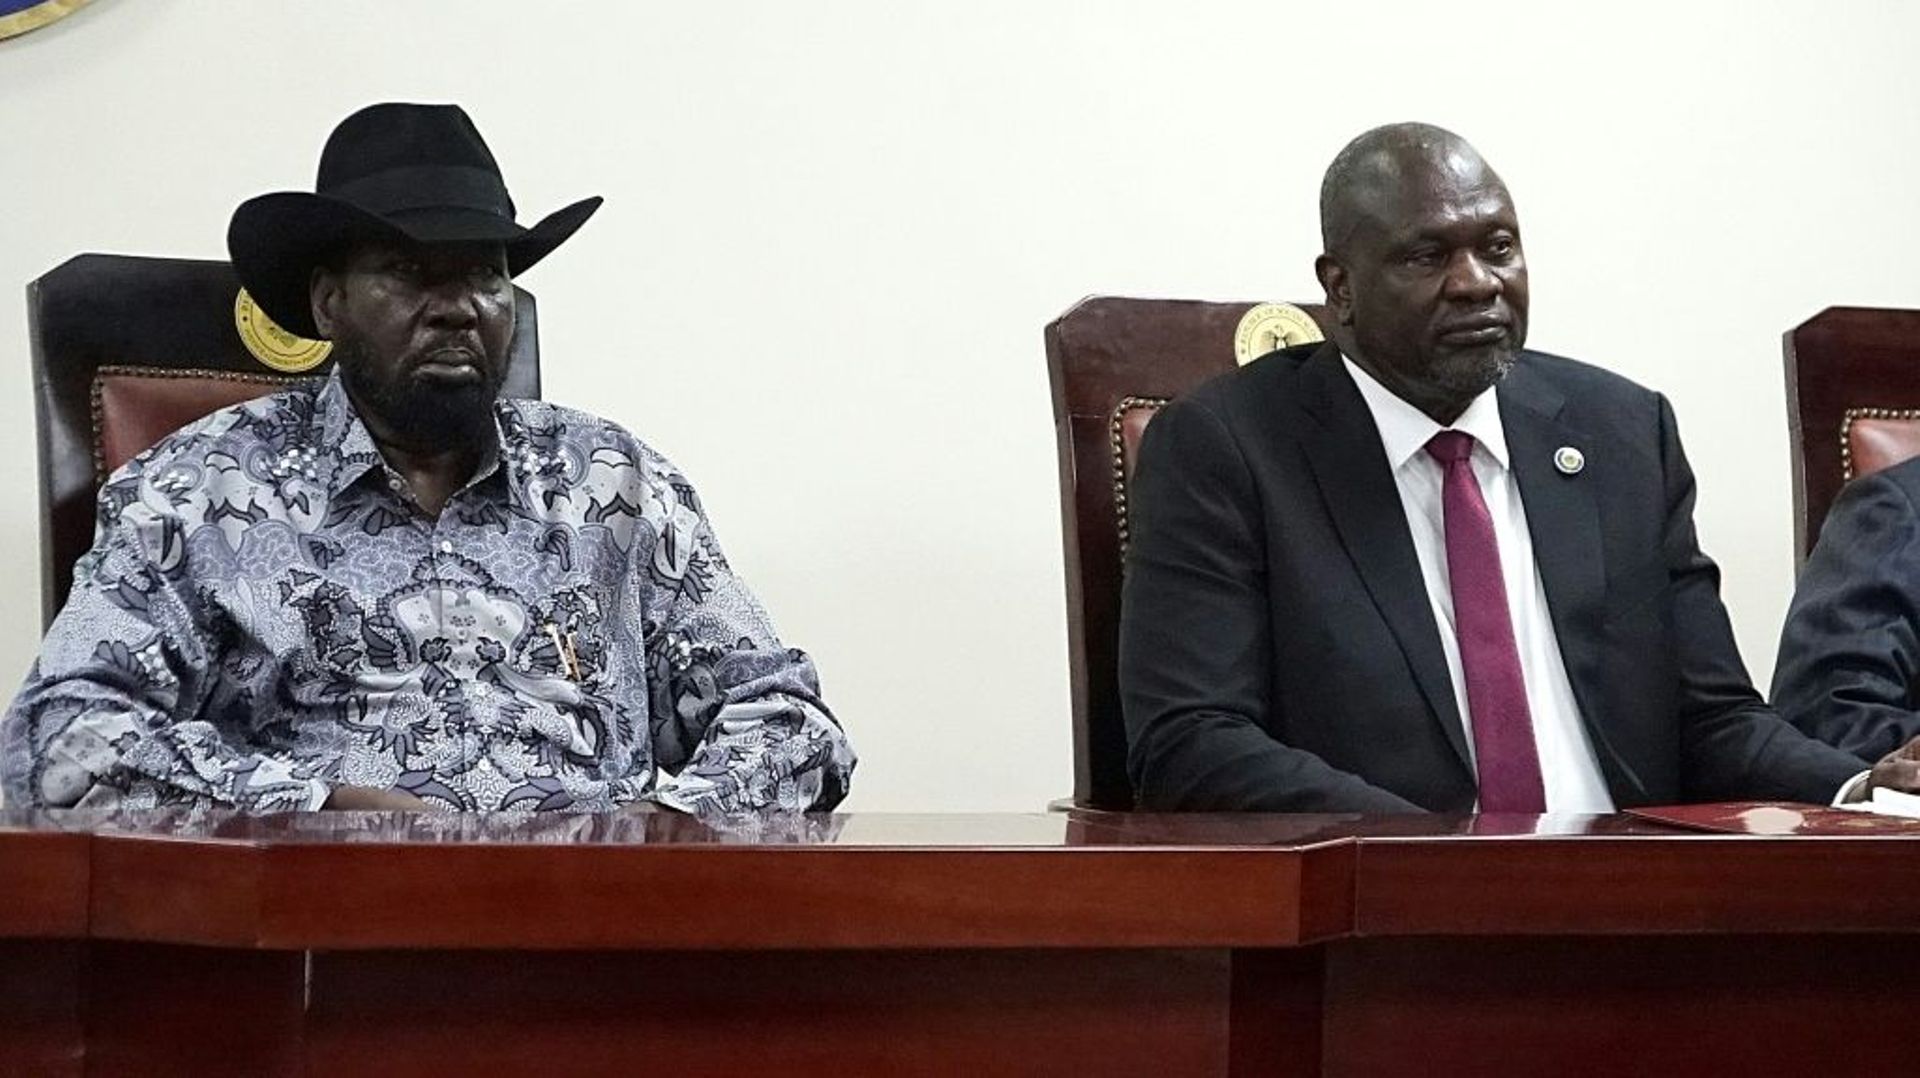 Les deux dirigeants ennemis du Soudan du Sud, le président Salva Kiir (G) et le vice-président Riek Machar, lors de la signature d'un accord le 3 avril 2022 à Juba 

South Sudanese President Salva Kiir (L), and  South Sudan's opposition leader Riek Machar